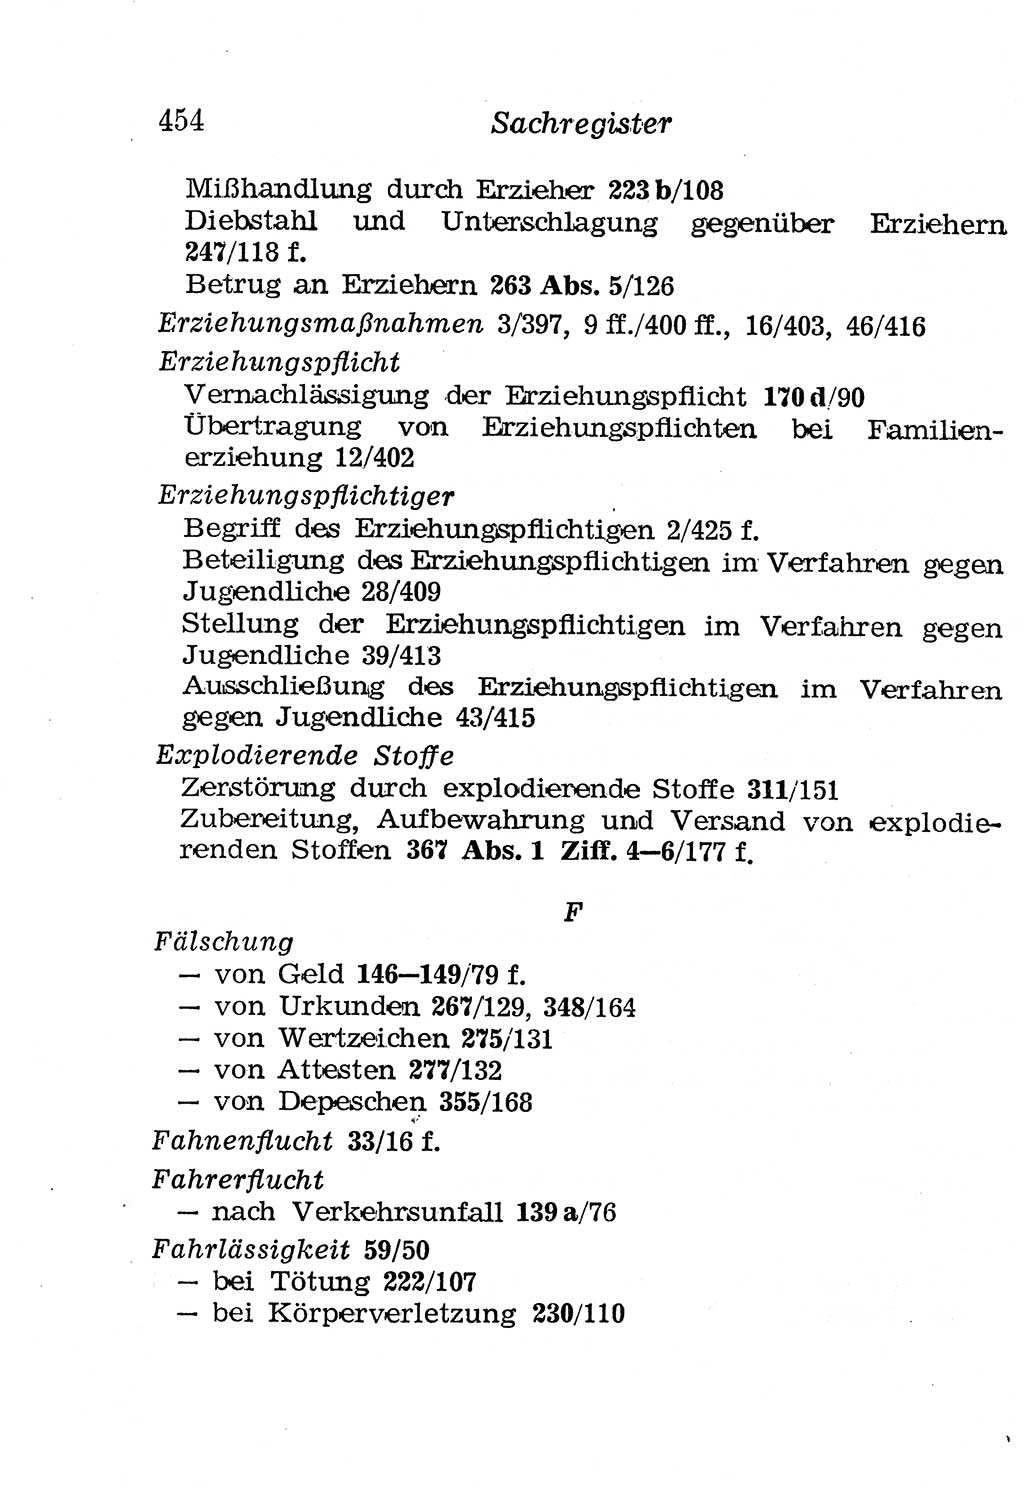 Strafgesetzbuch (StGB) und andere Strafgesetze [Deutsche Demokratische Republik (DDR)] 1958, Seite 454 (StGB Strafges. DDR 1958, S. 454)